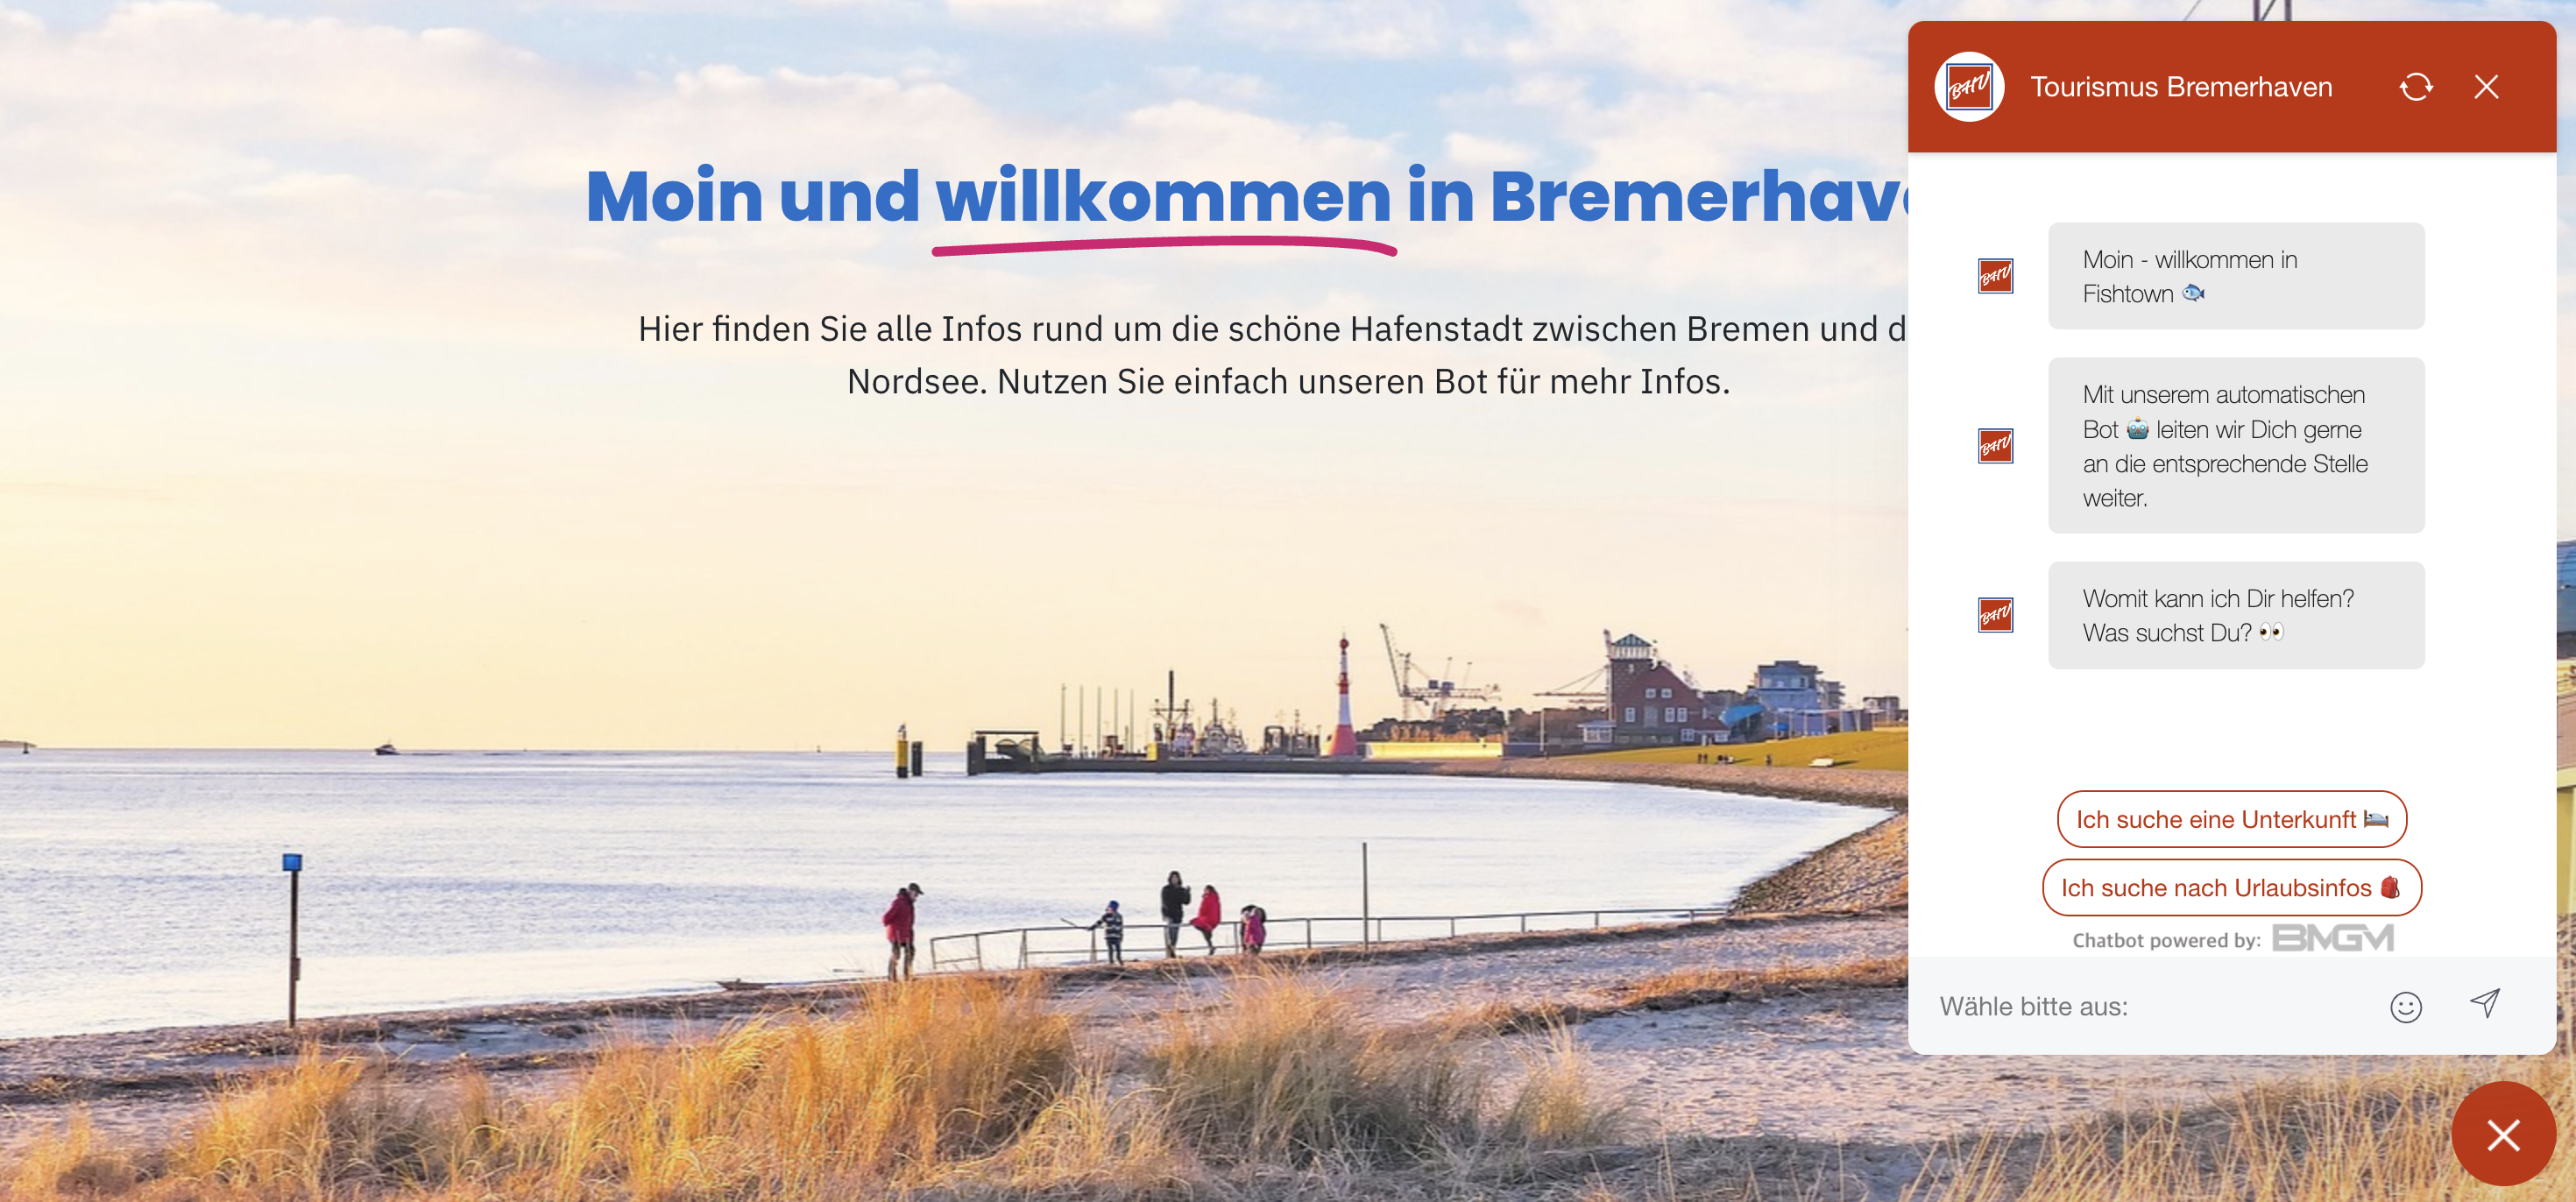 Tourismus Bremerhaven